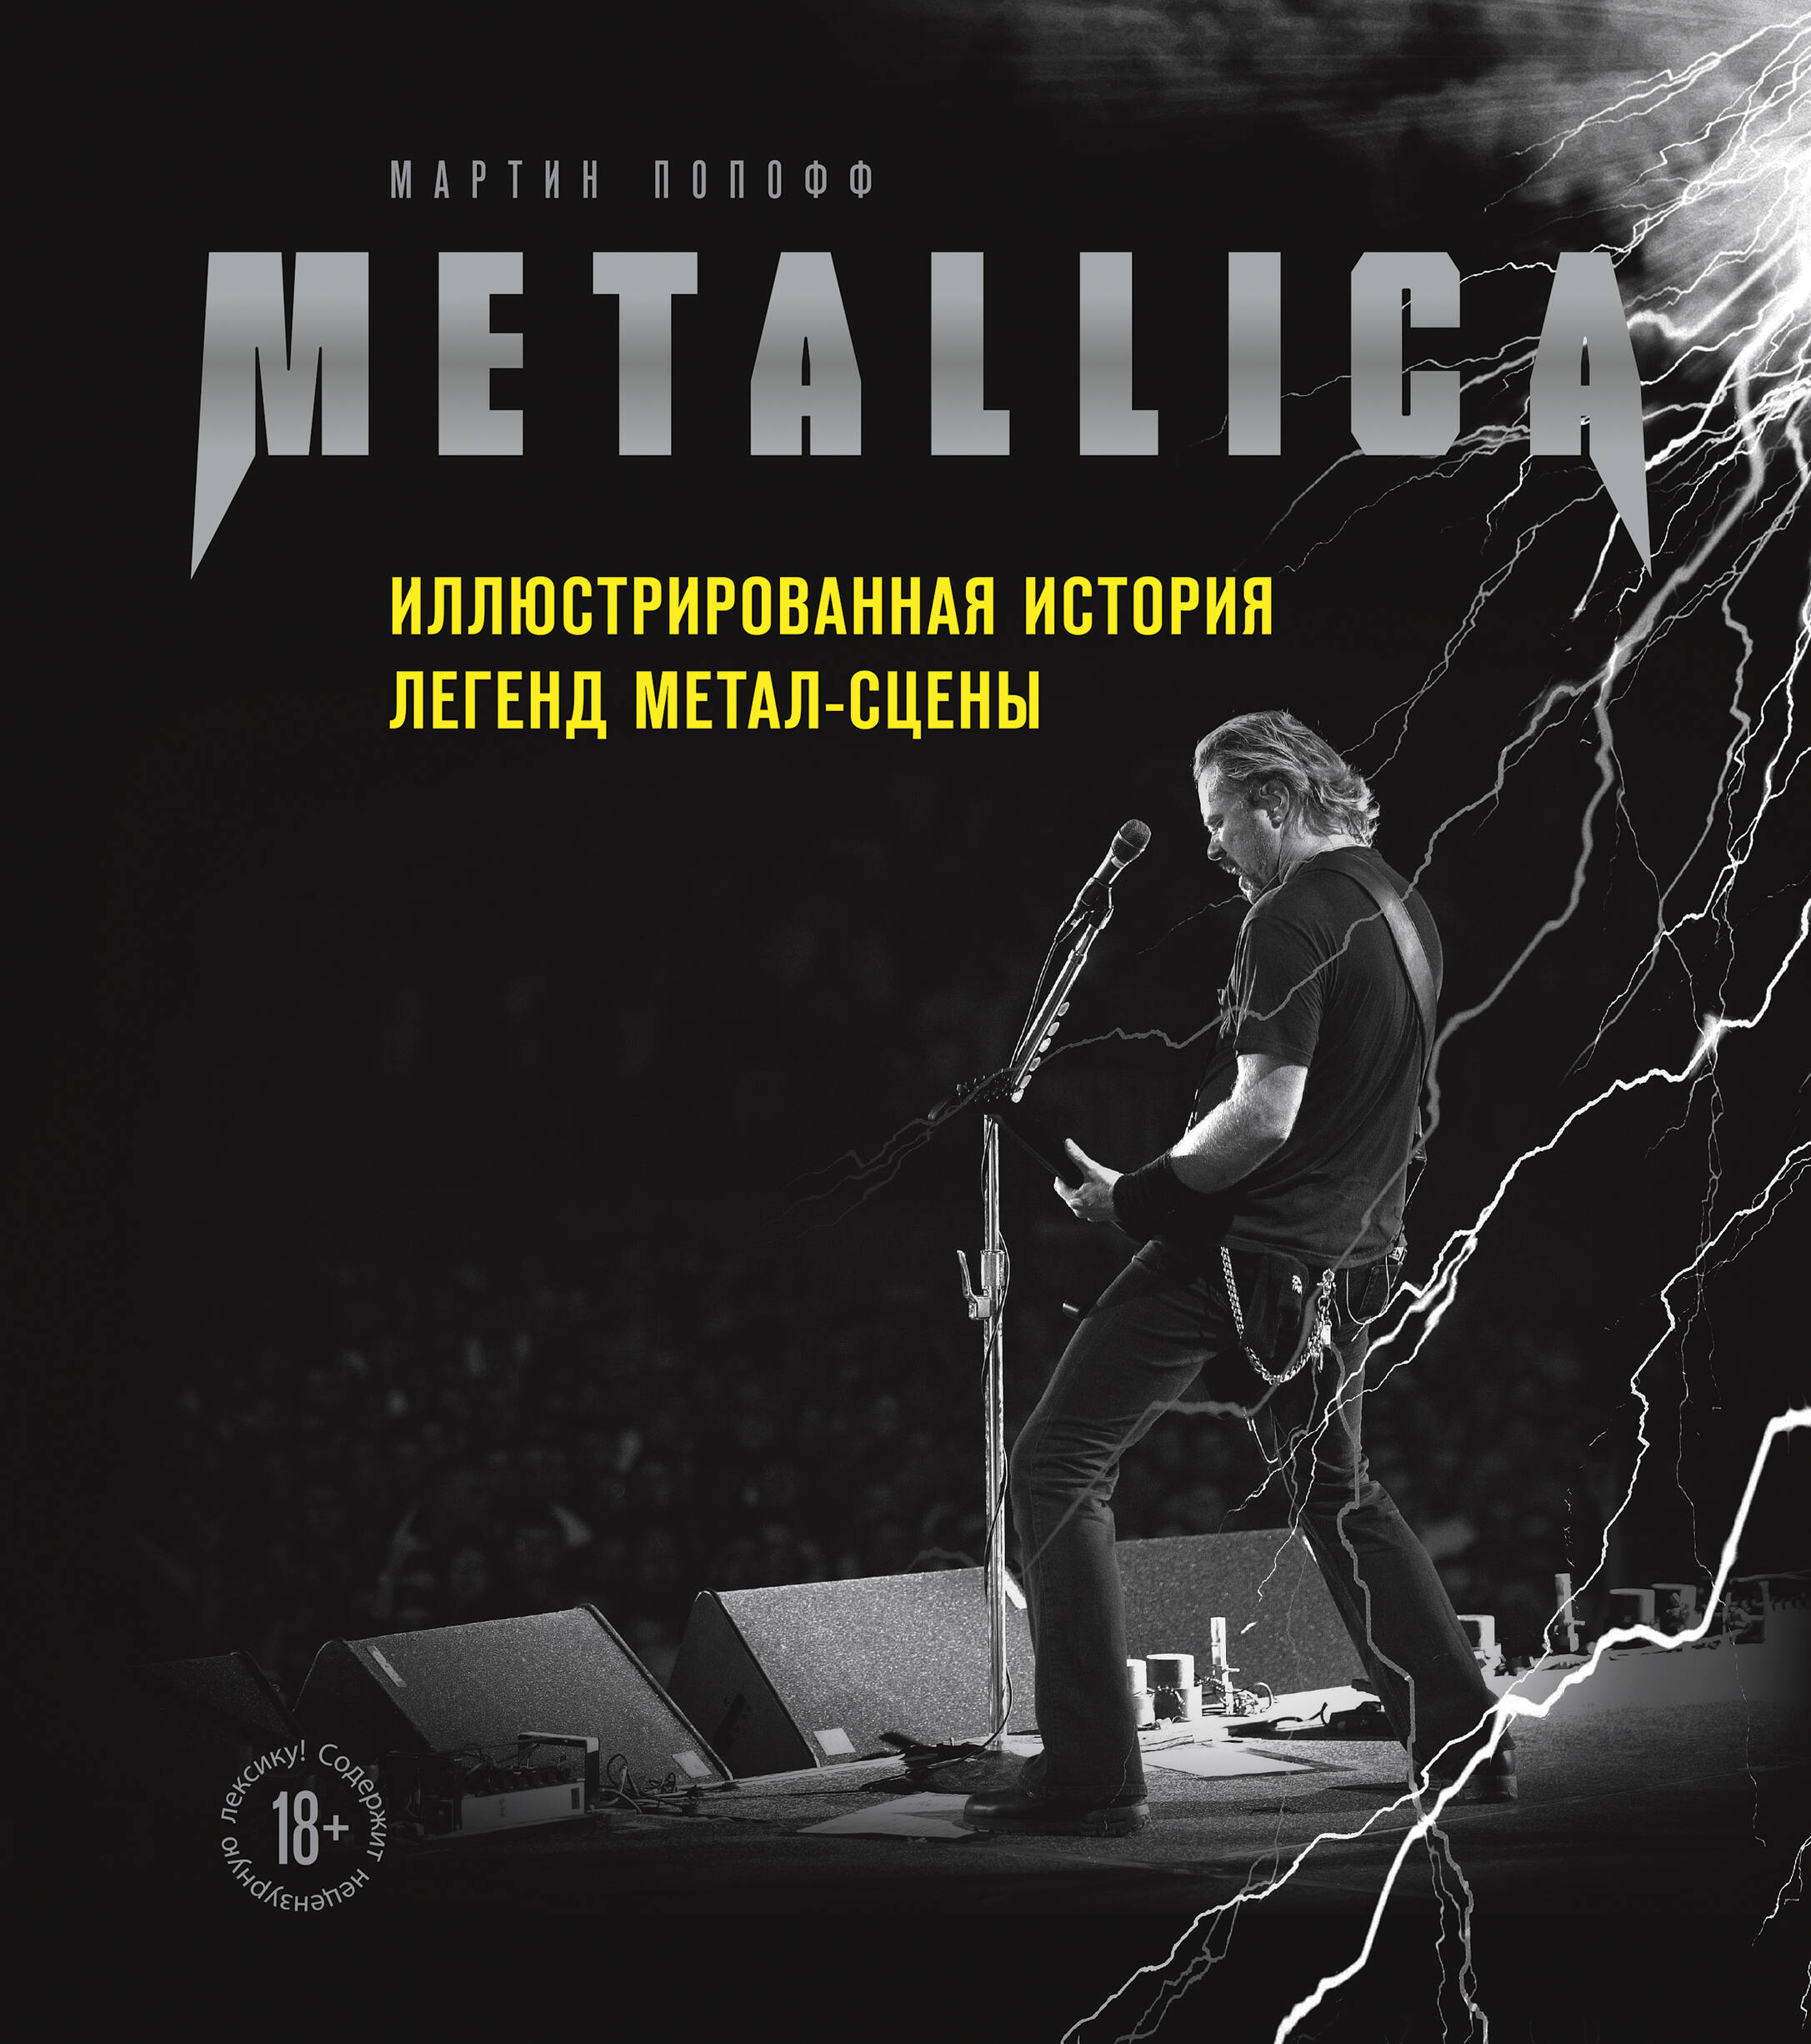 metallica – hardwired… to self destruct 2 lp книга metallica иллюстрированная история легенд метал сцены – набор Попофф Мартин Metallica. Иллюстрированная история легенд метал-сцены